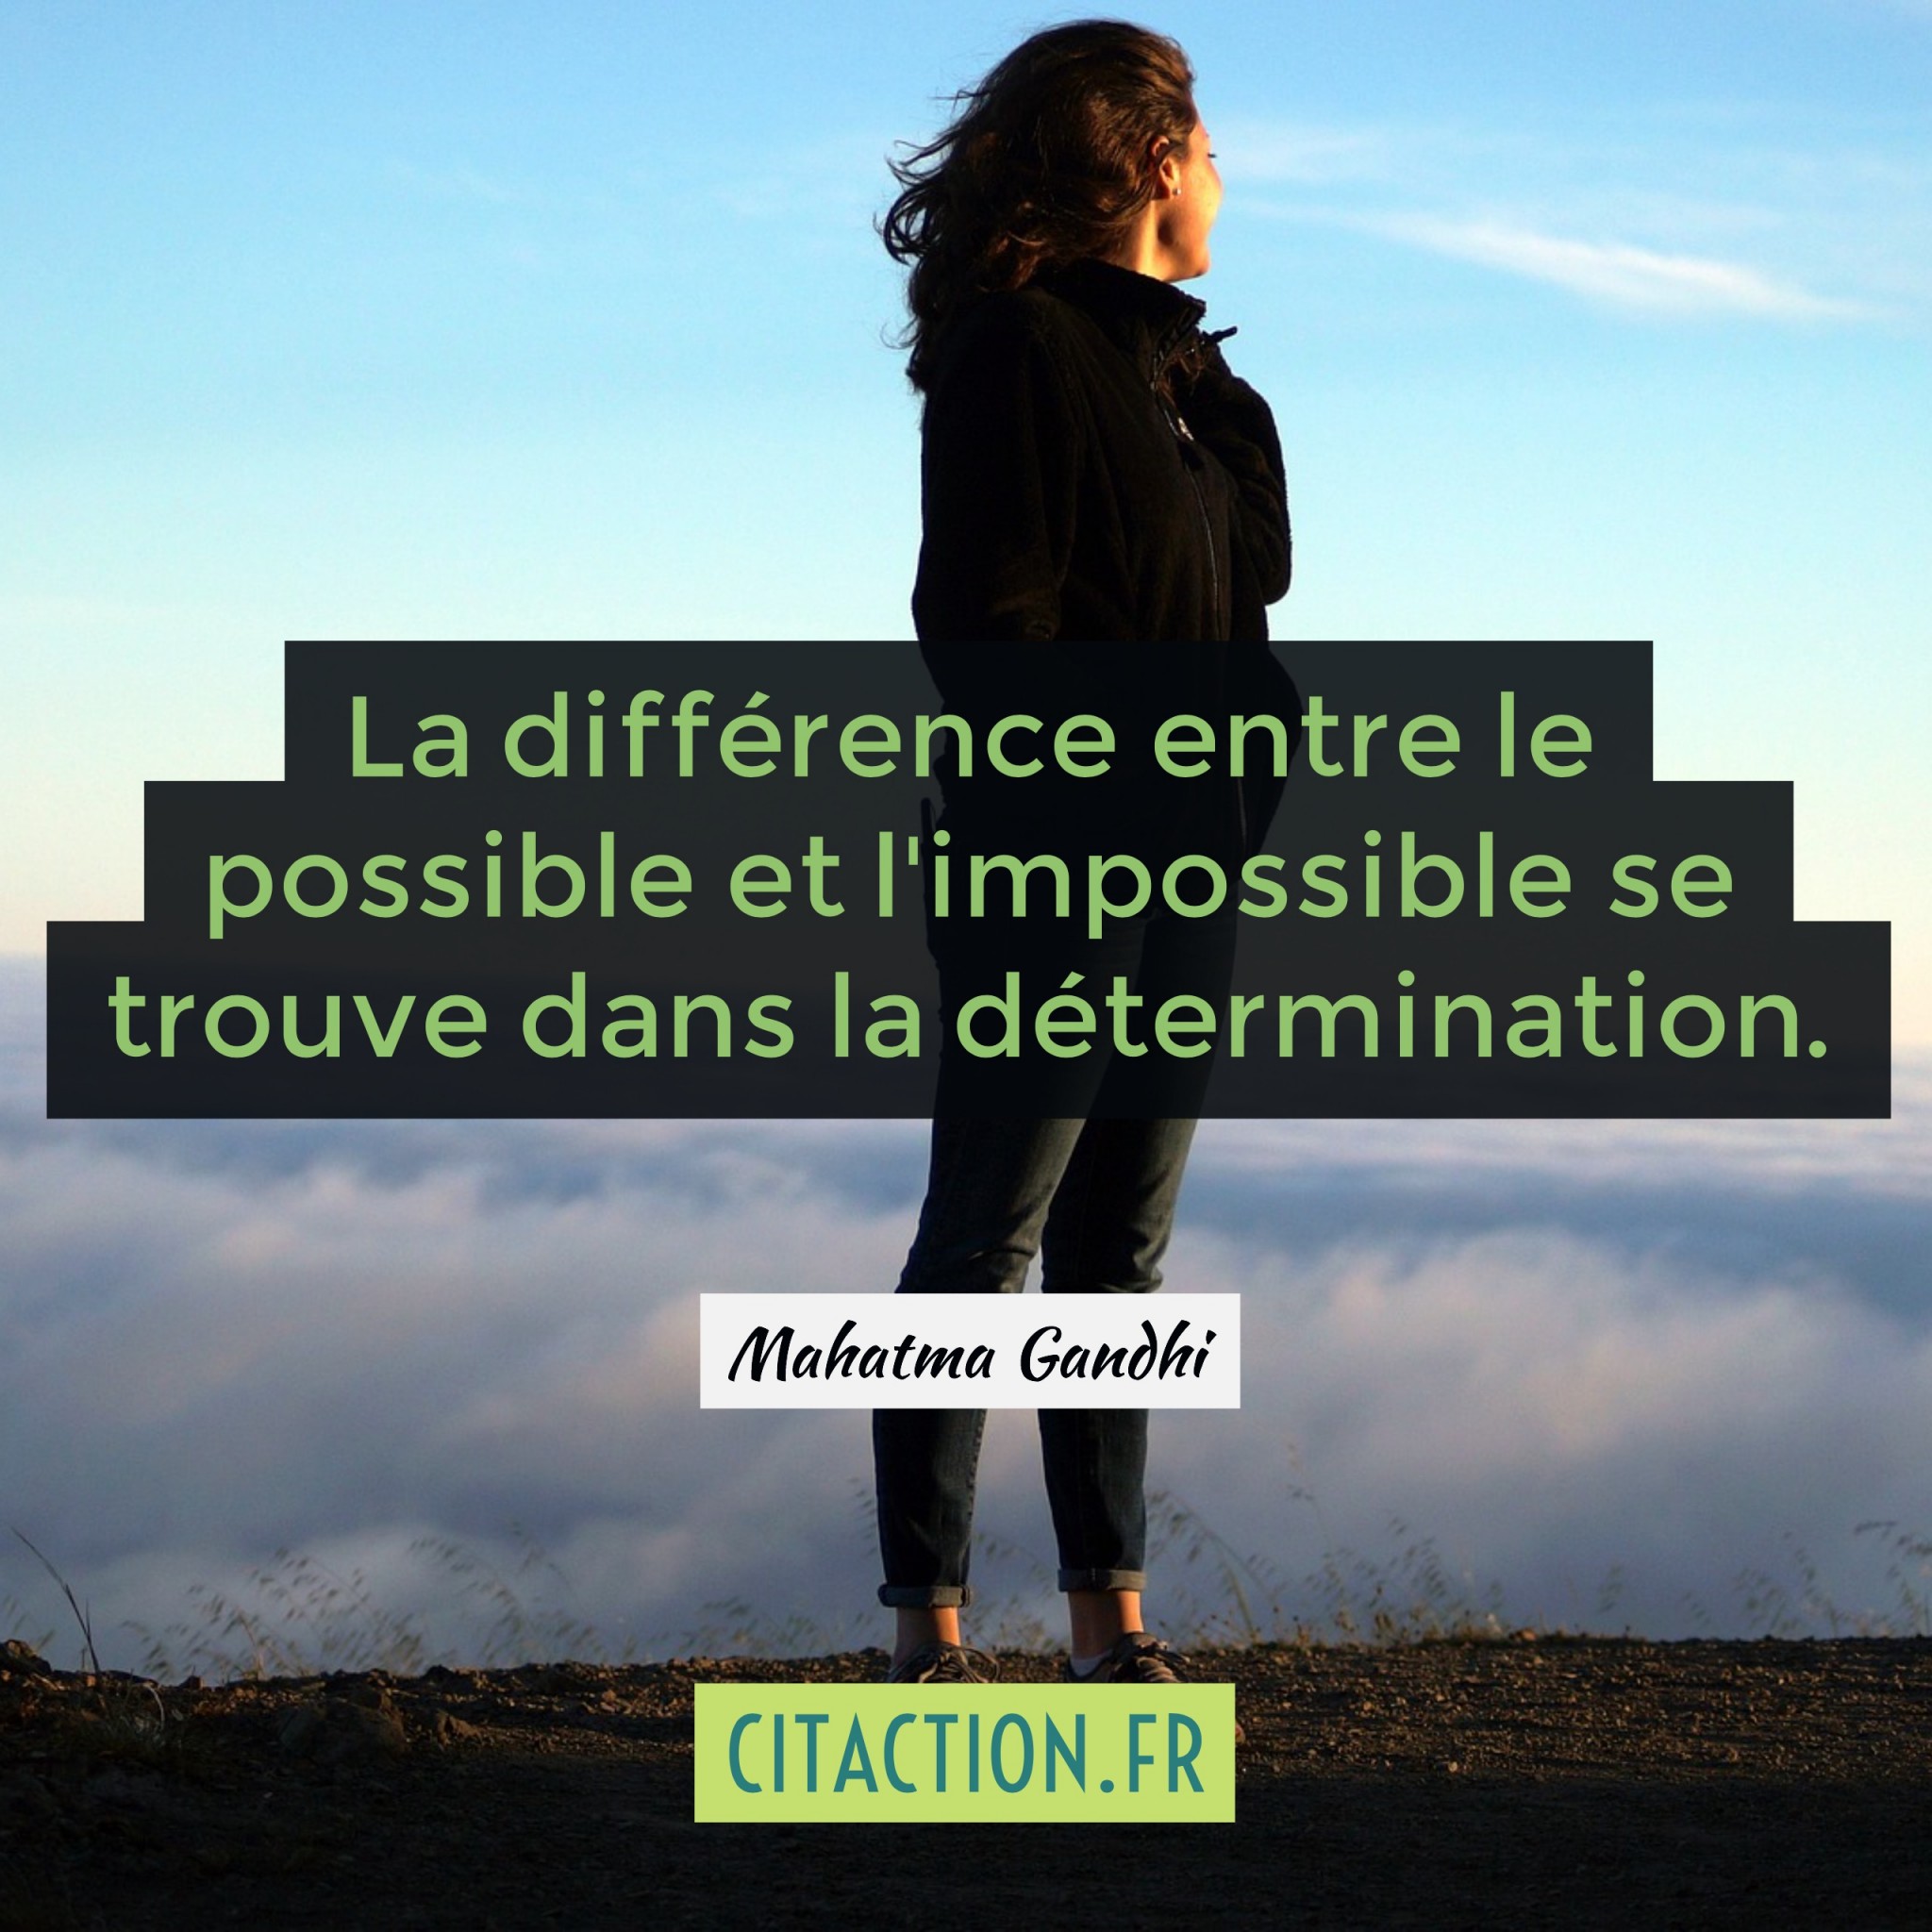 La différence entre le possible et l’impossible se trouve dans la détermination.